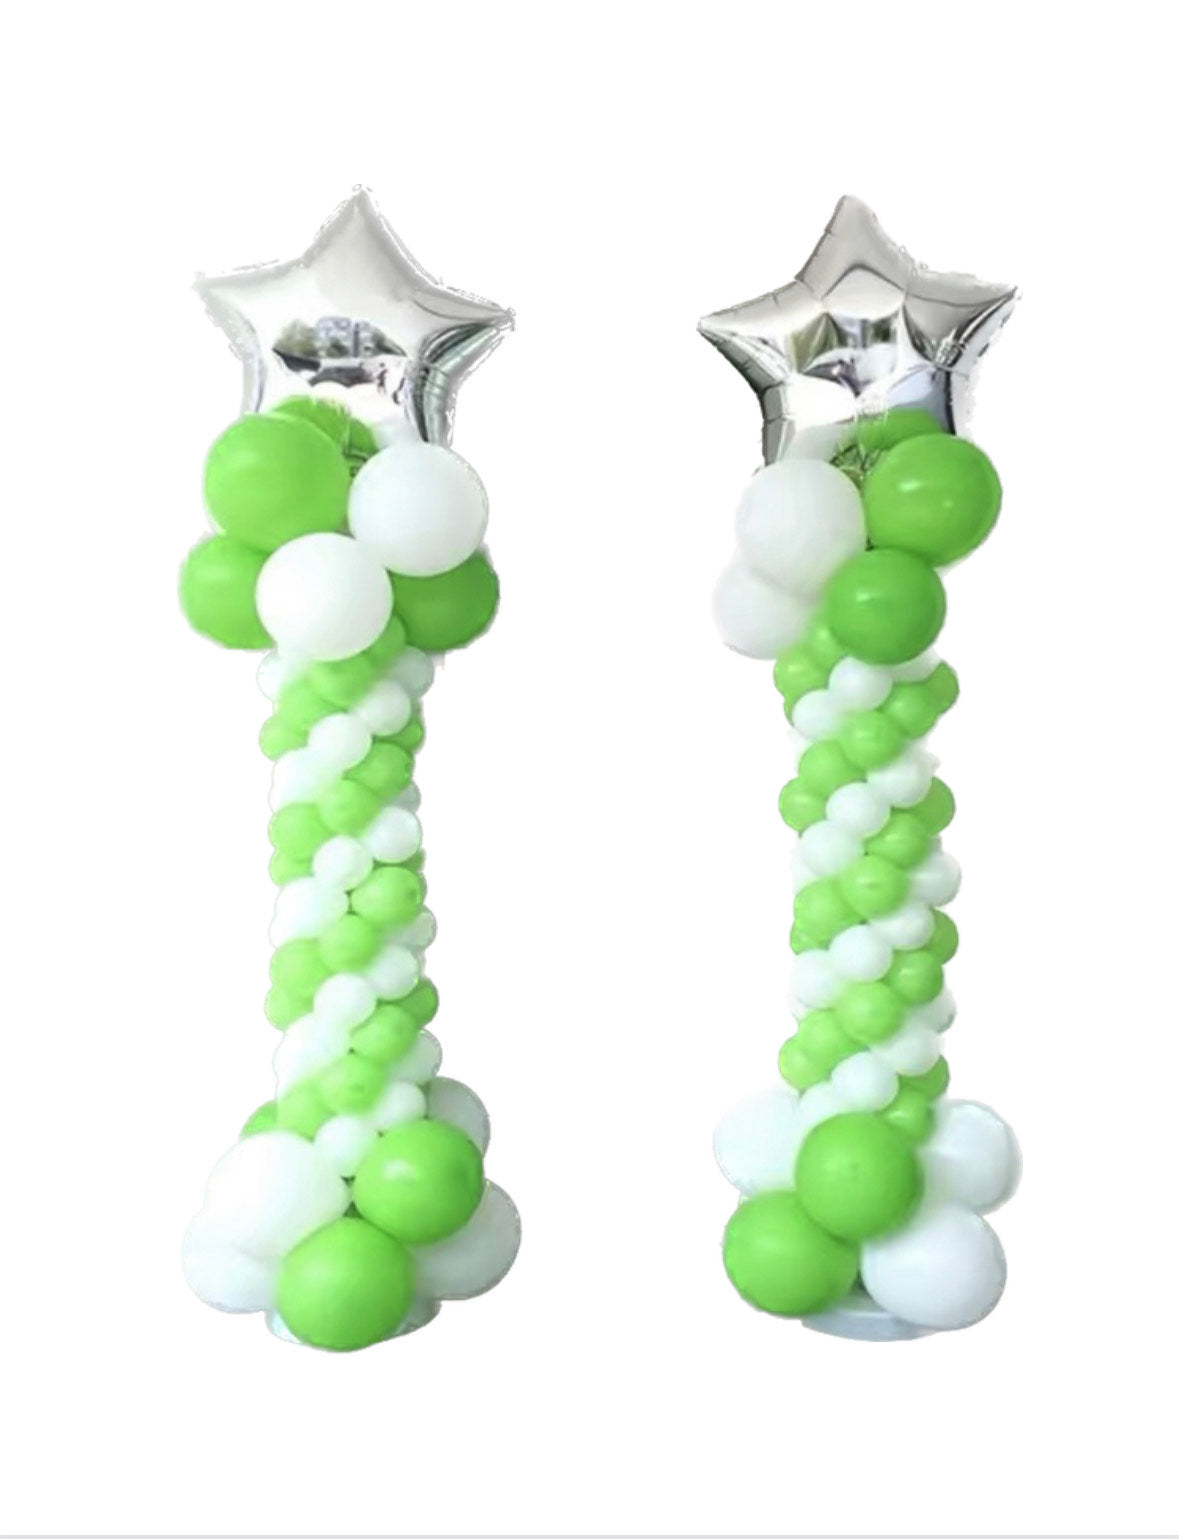 2 Balloon Columns